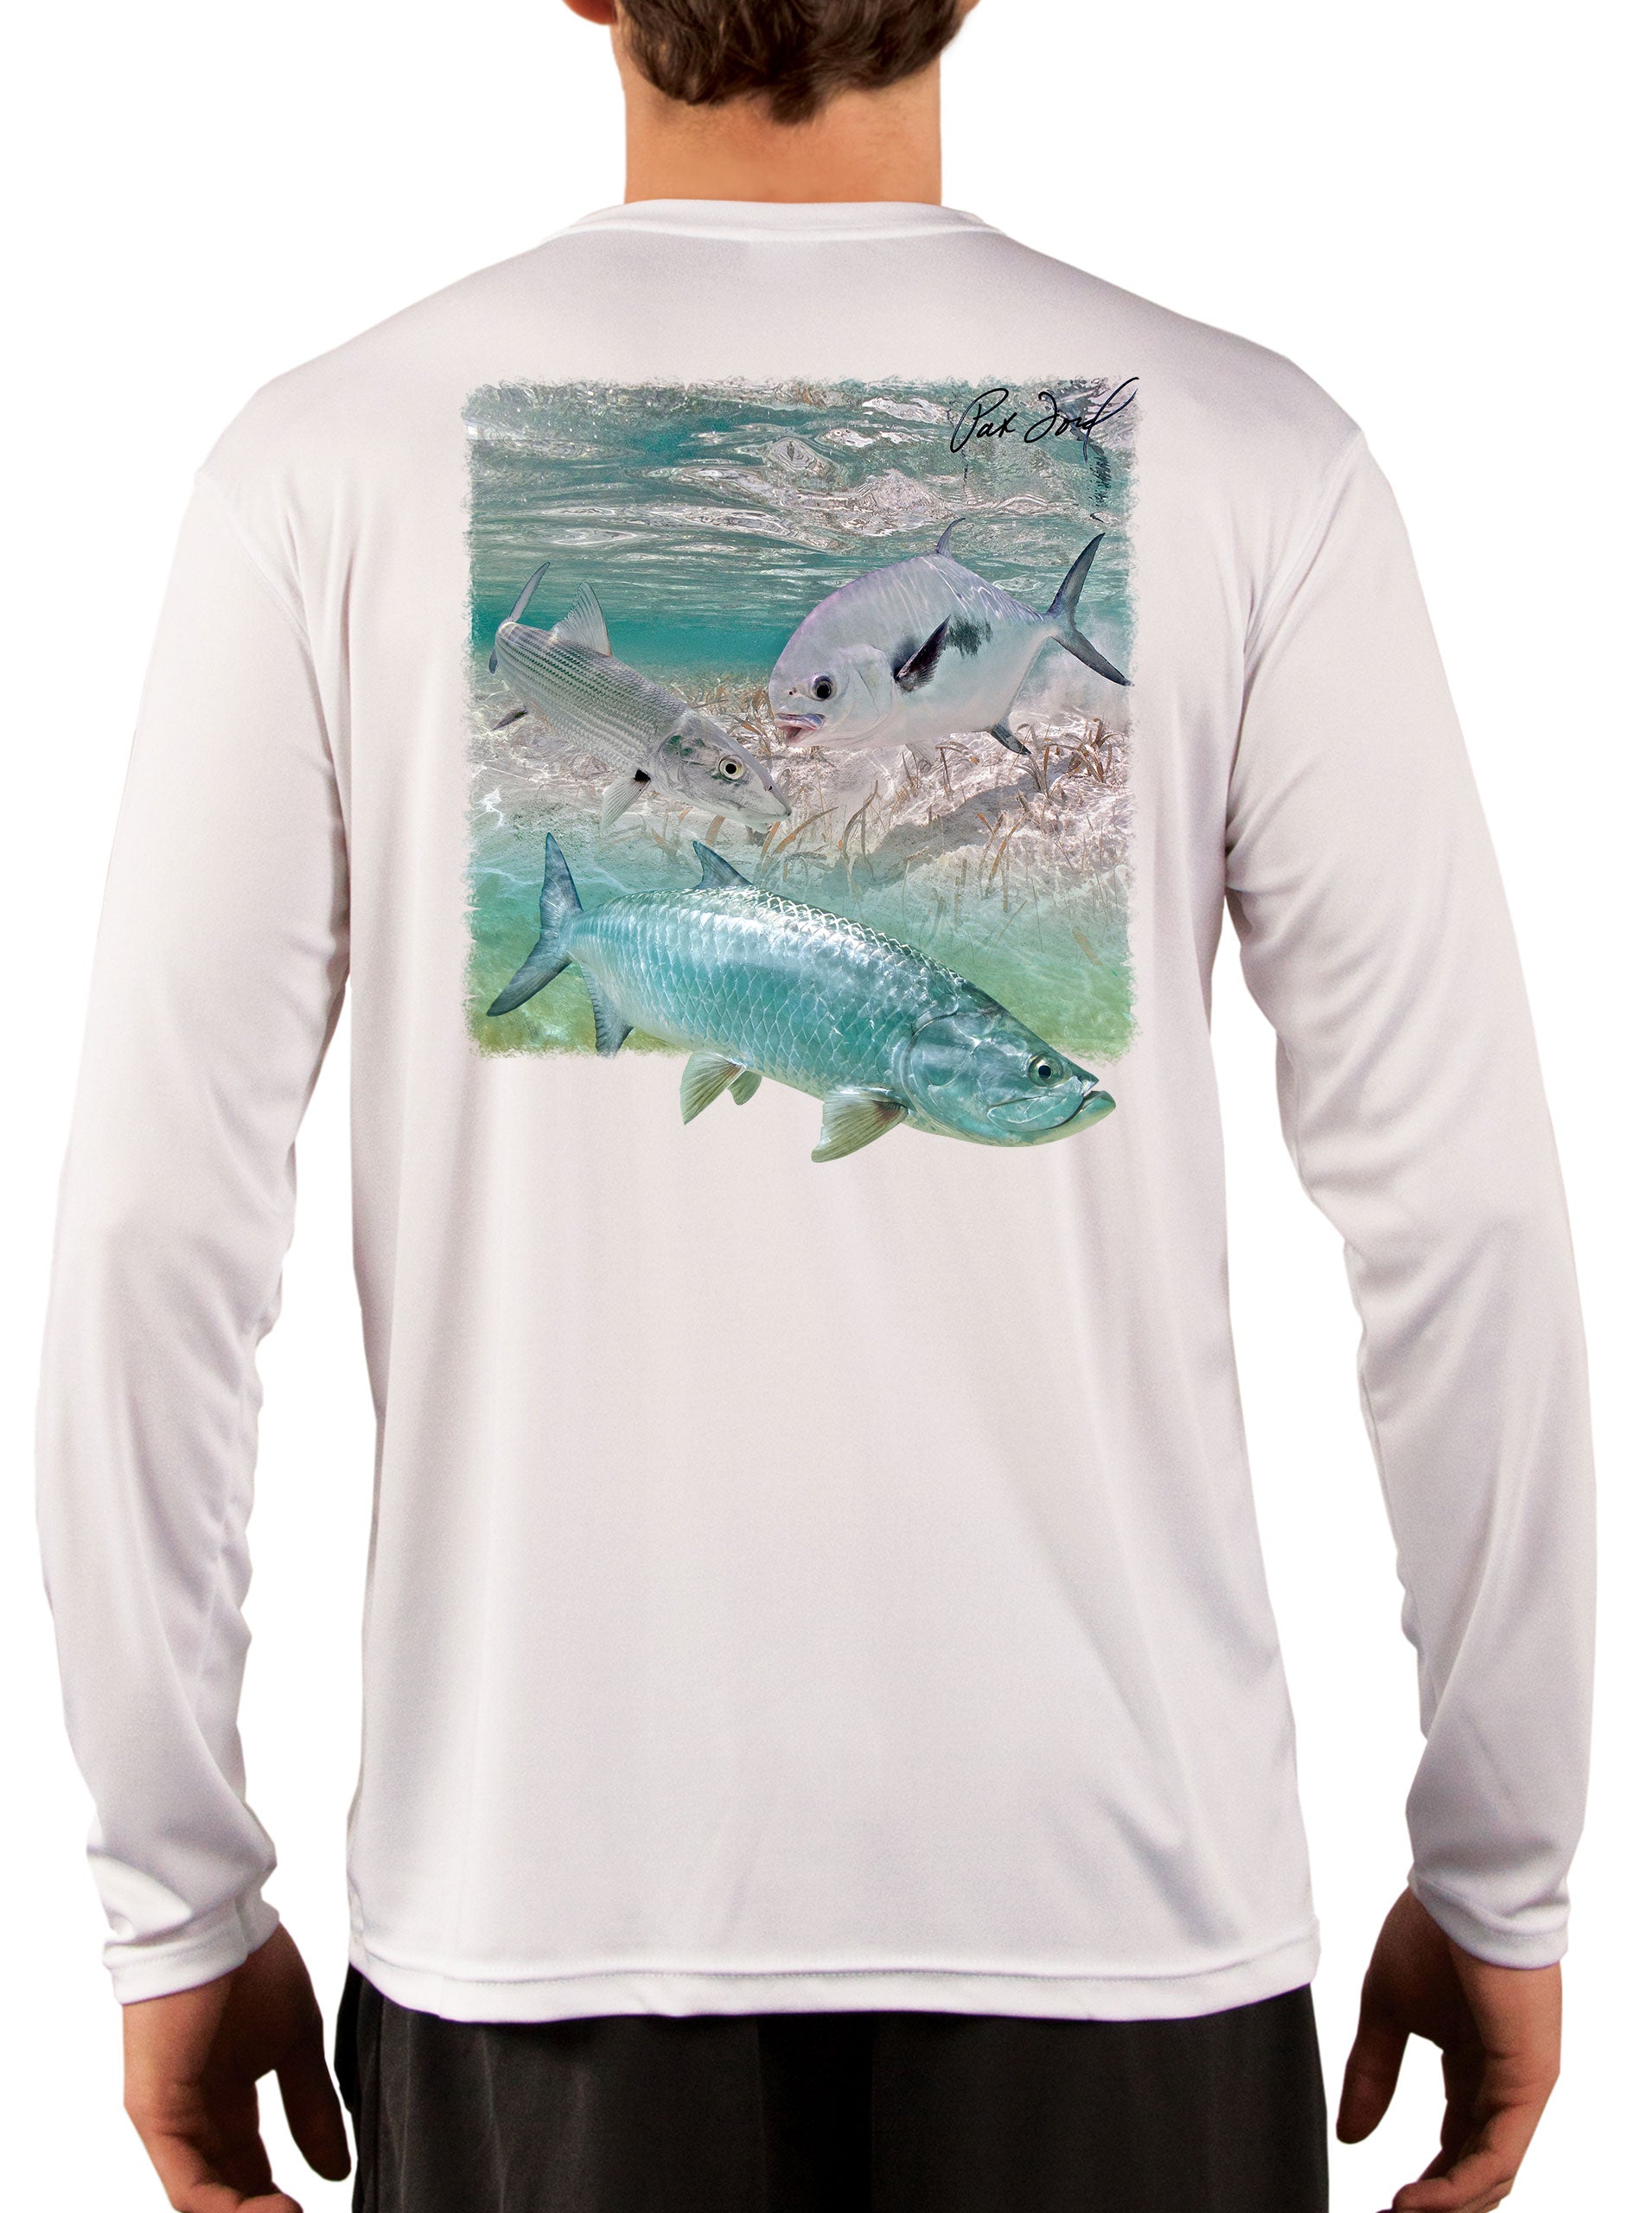 Pat Ford Key West Slam Tarpon Bonefish & Permit Fishing Shirt – Skiff Life